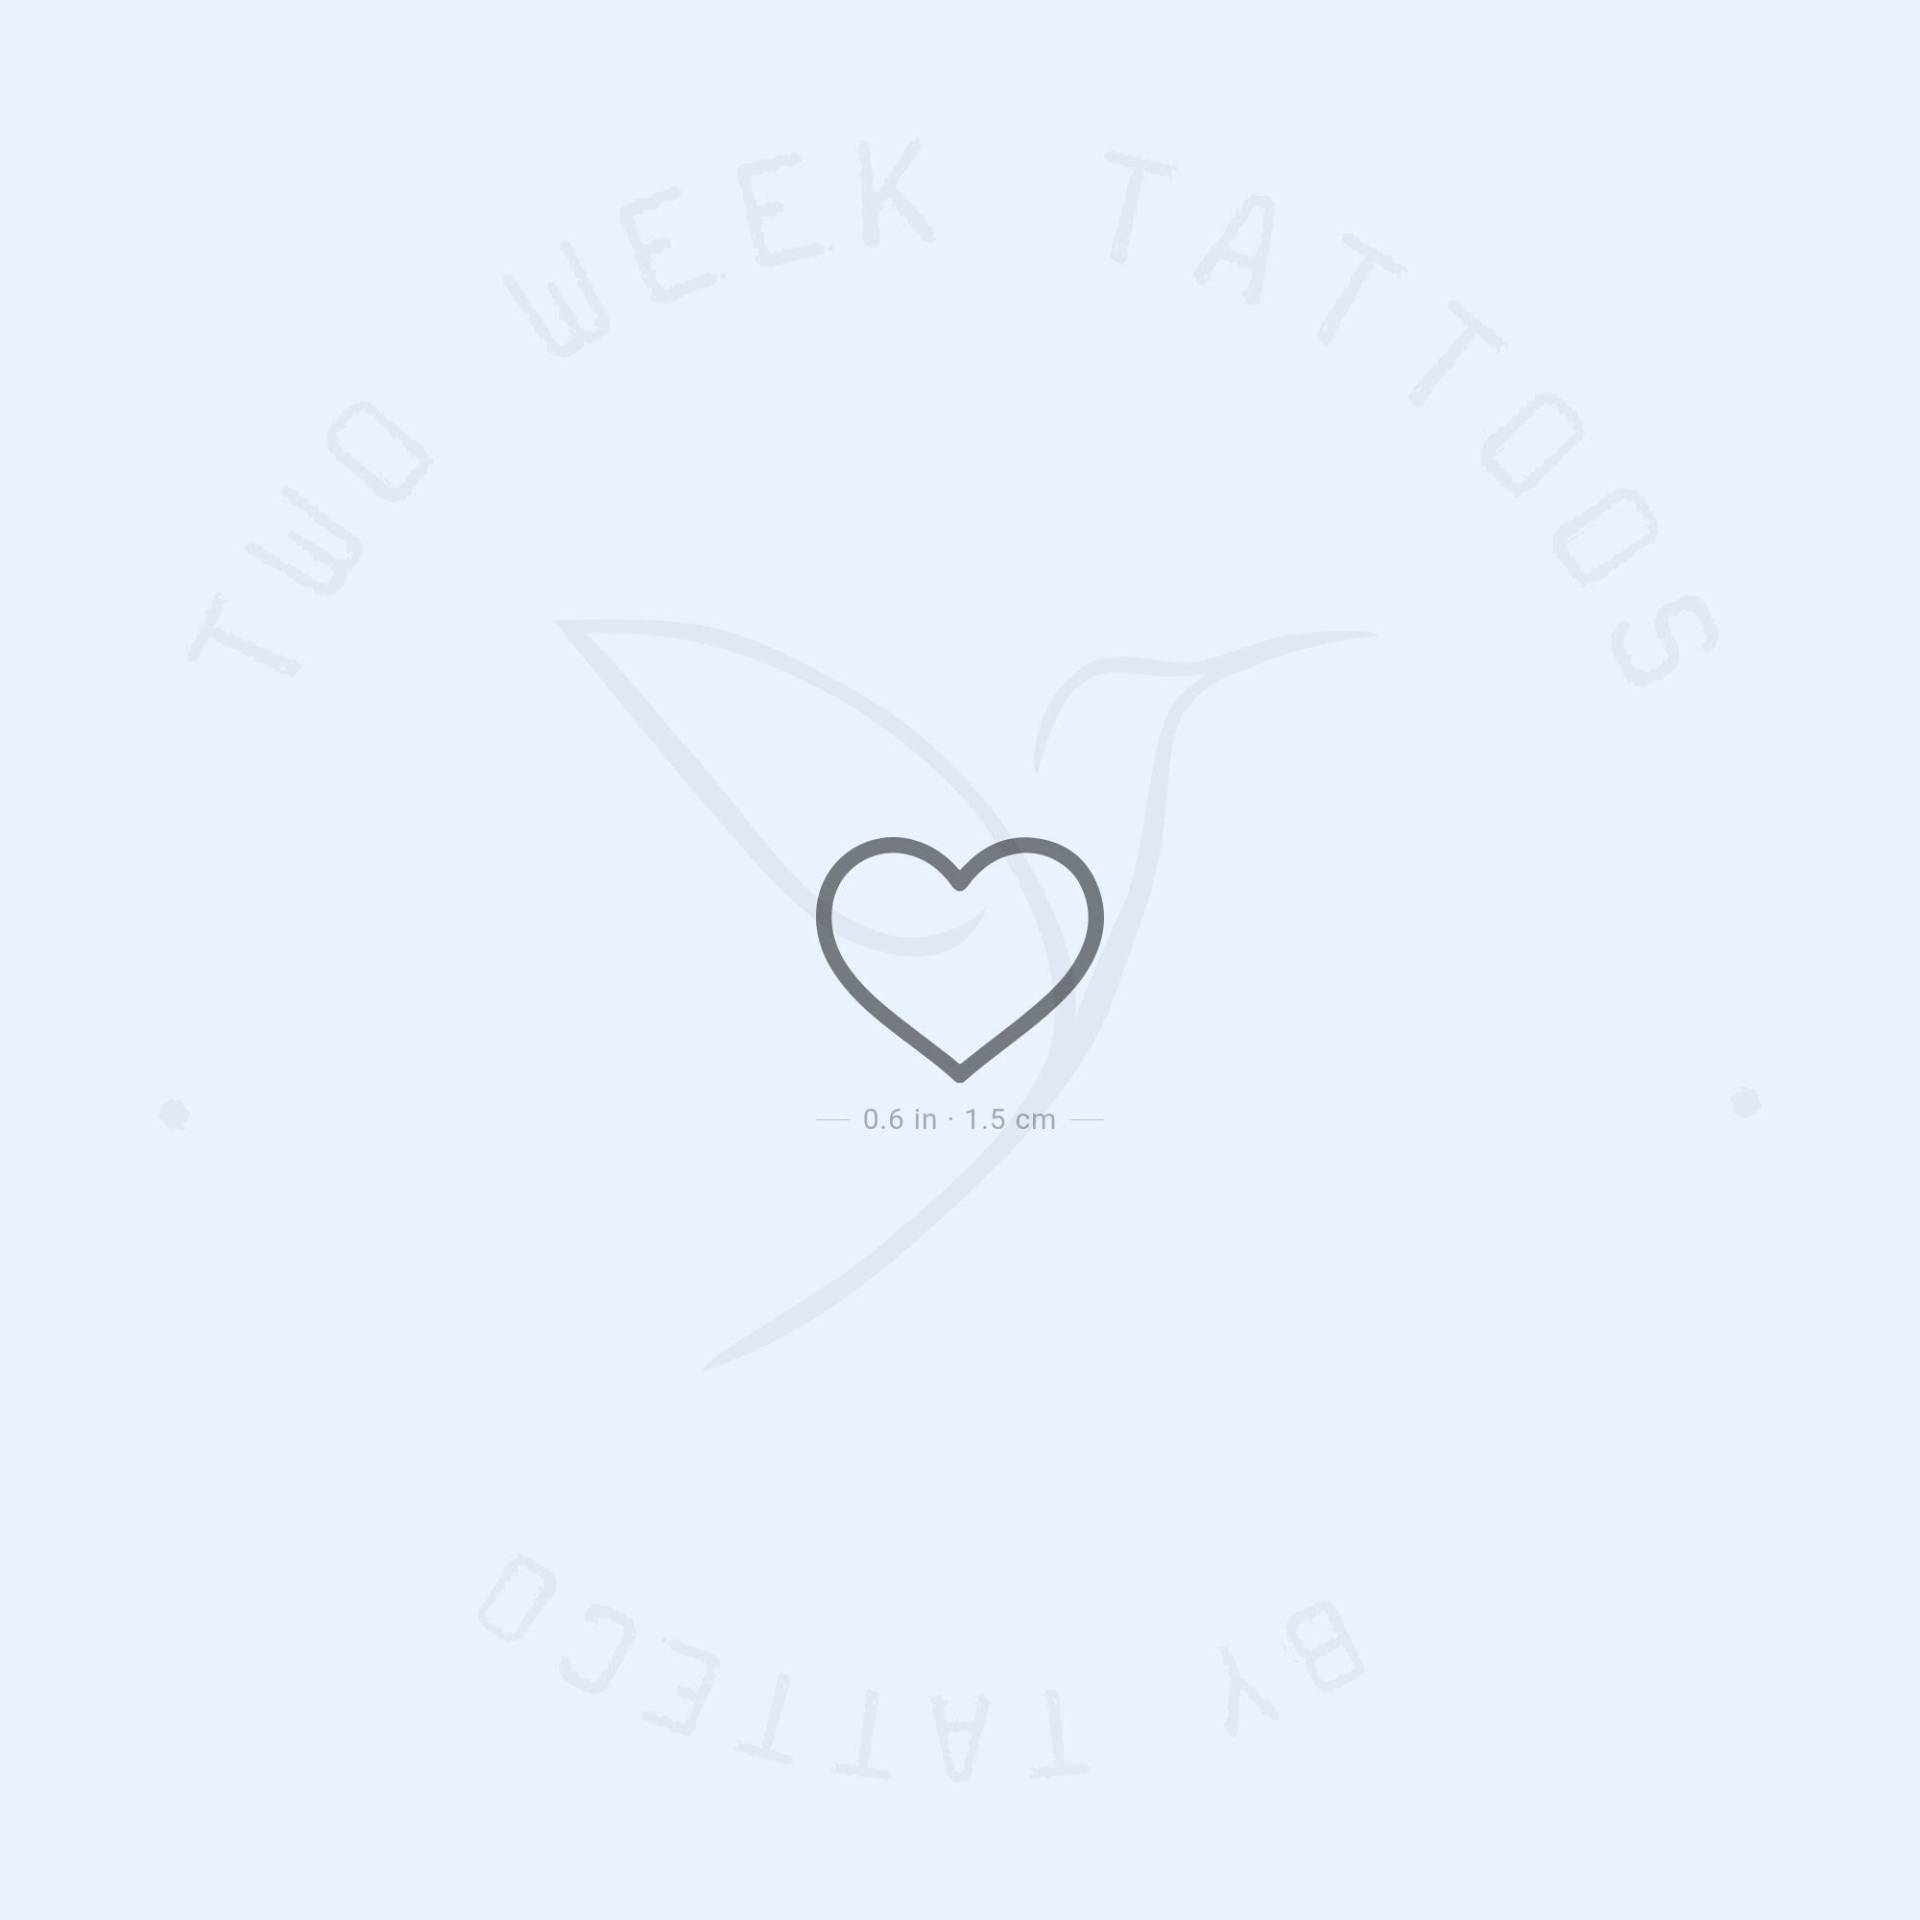 Herz Umriss Semi-Permanent Tattoo | 2Er Set von twoweektattoos